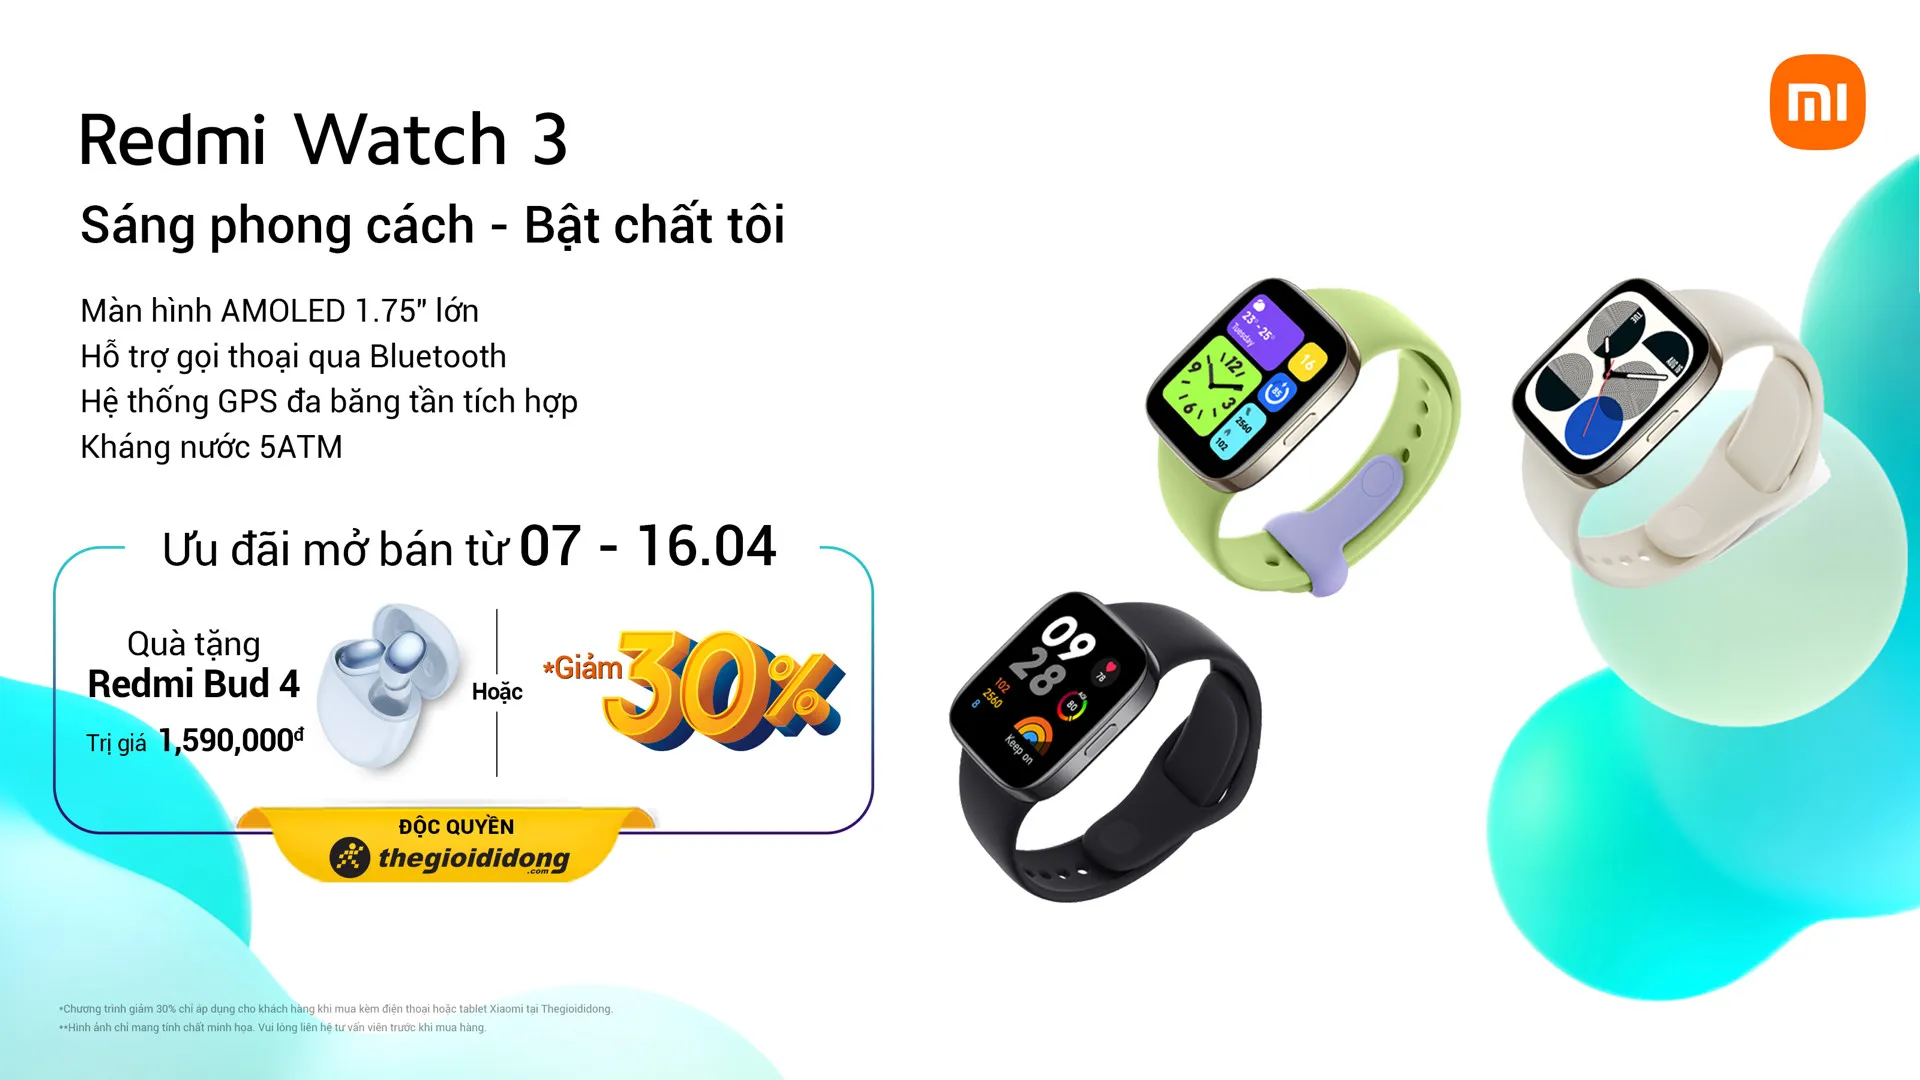 Xiaomi ra mắt đồng hồ thông minh Redmi Watch 3 với giá 2,790,000 VND